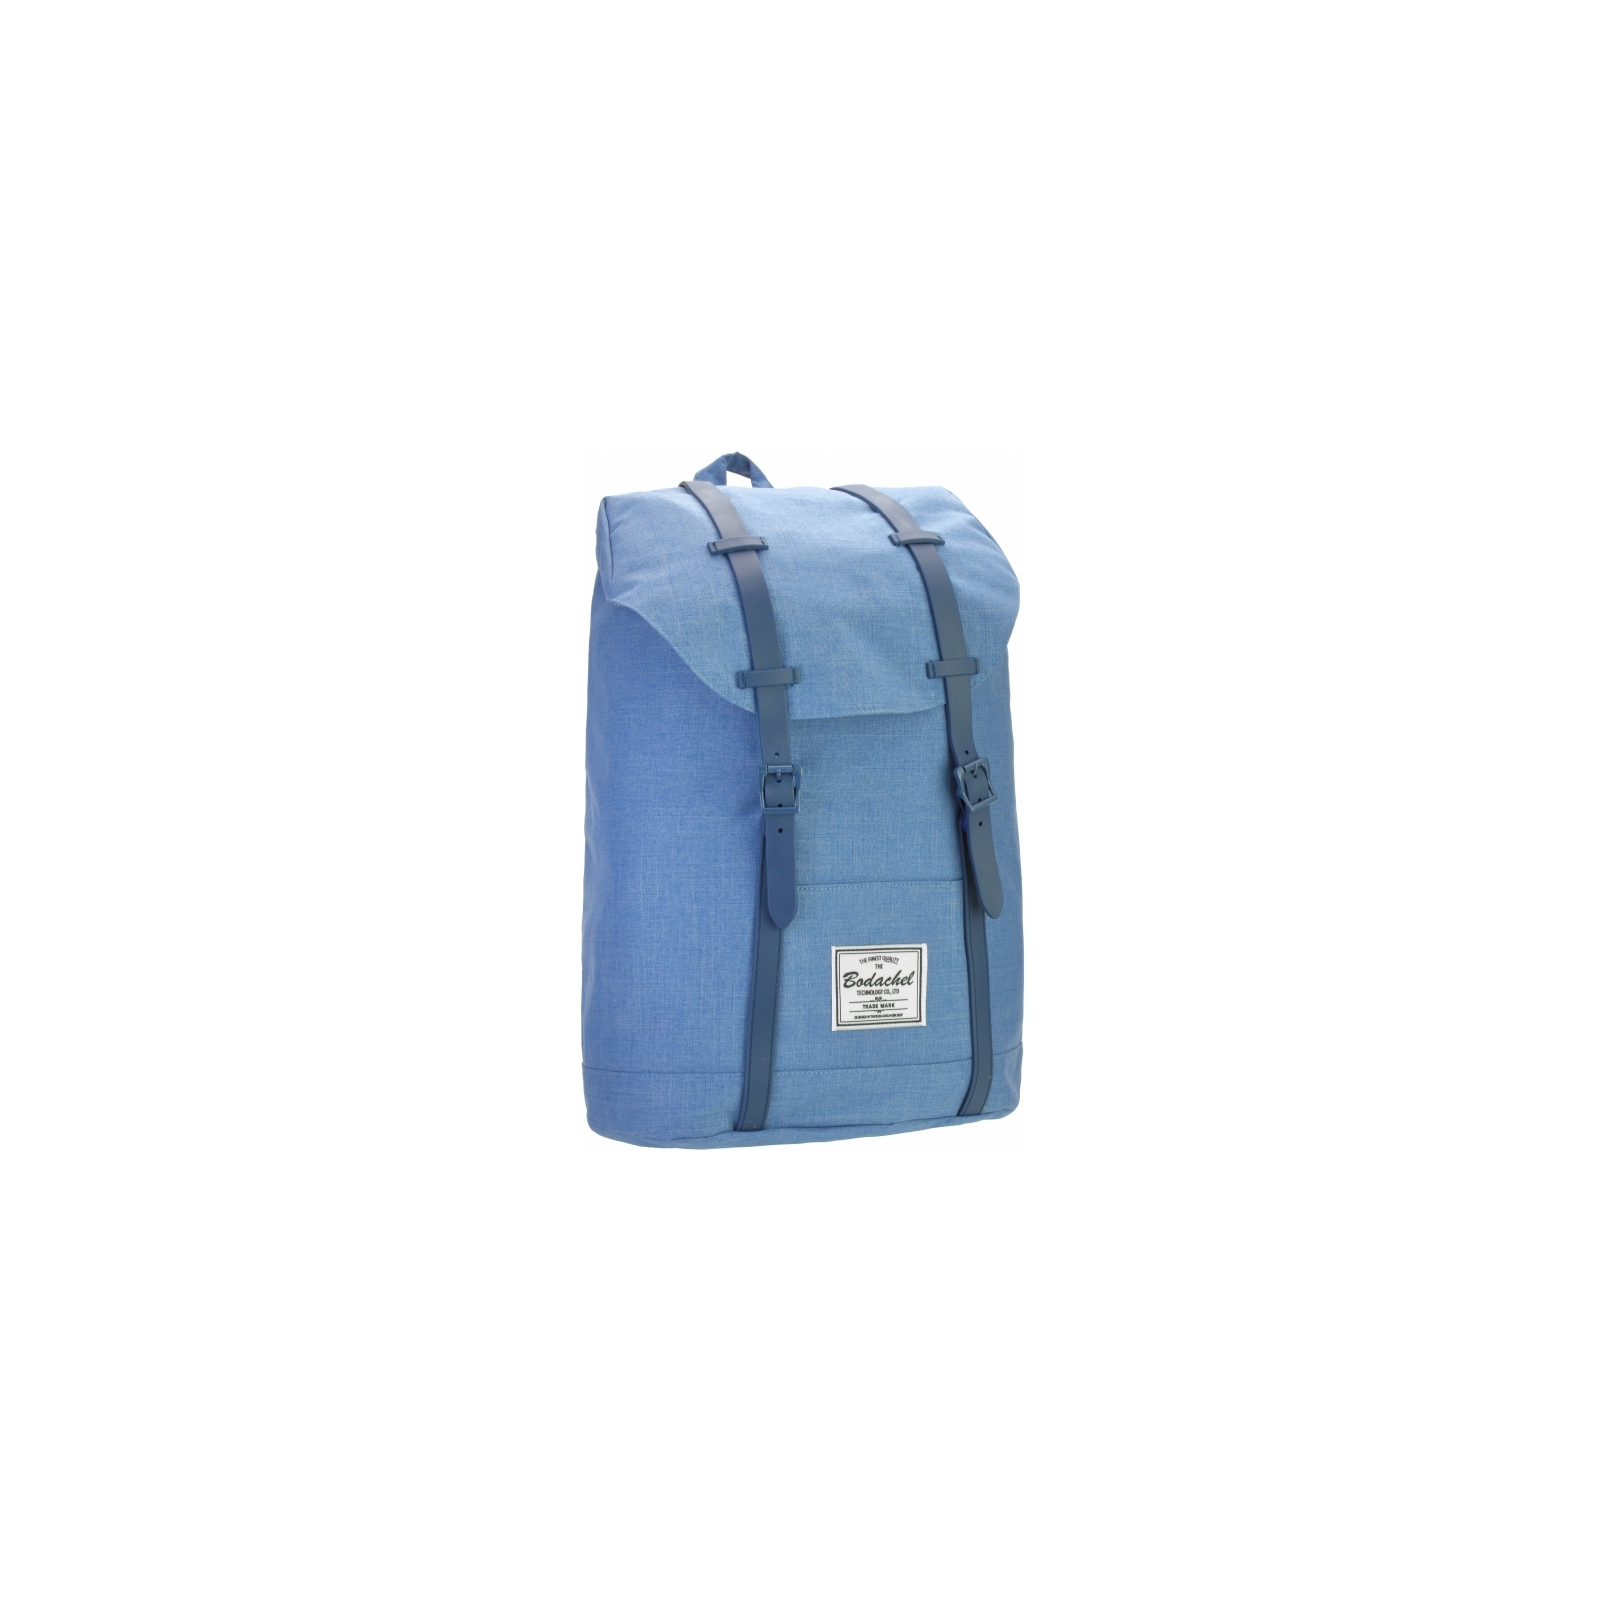 Рюкзак школьный Bodachel 46*16*30 см синий (BS09-31)